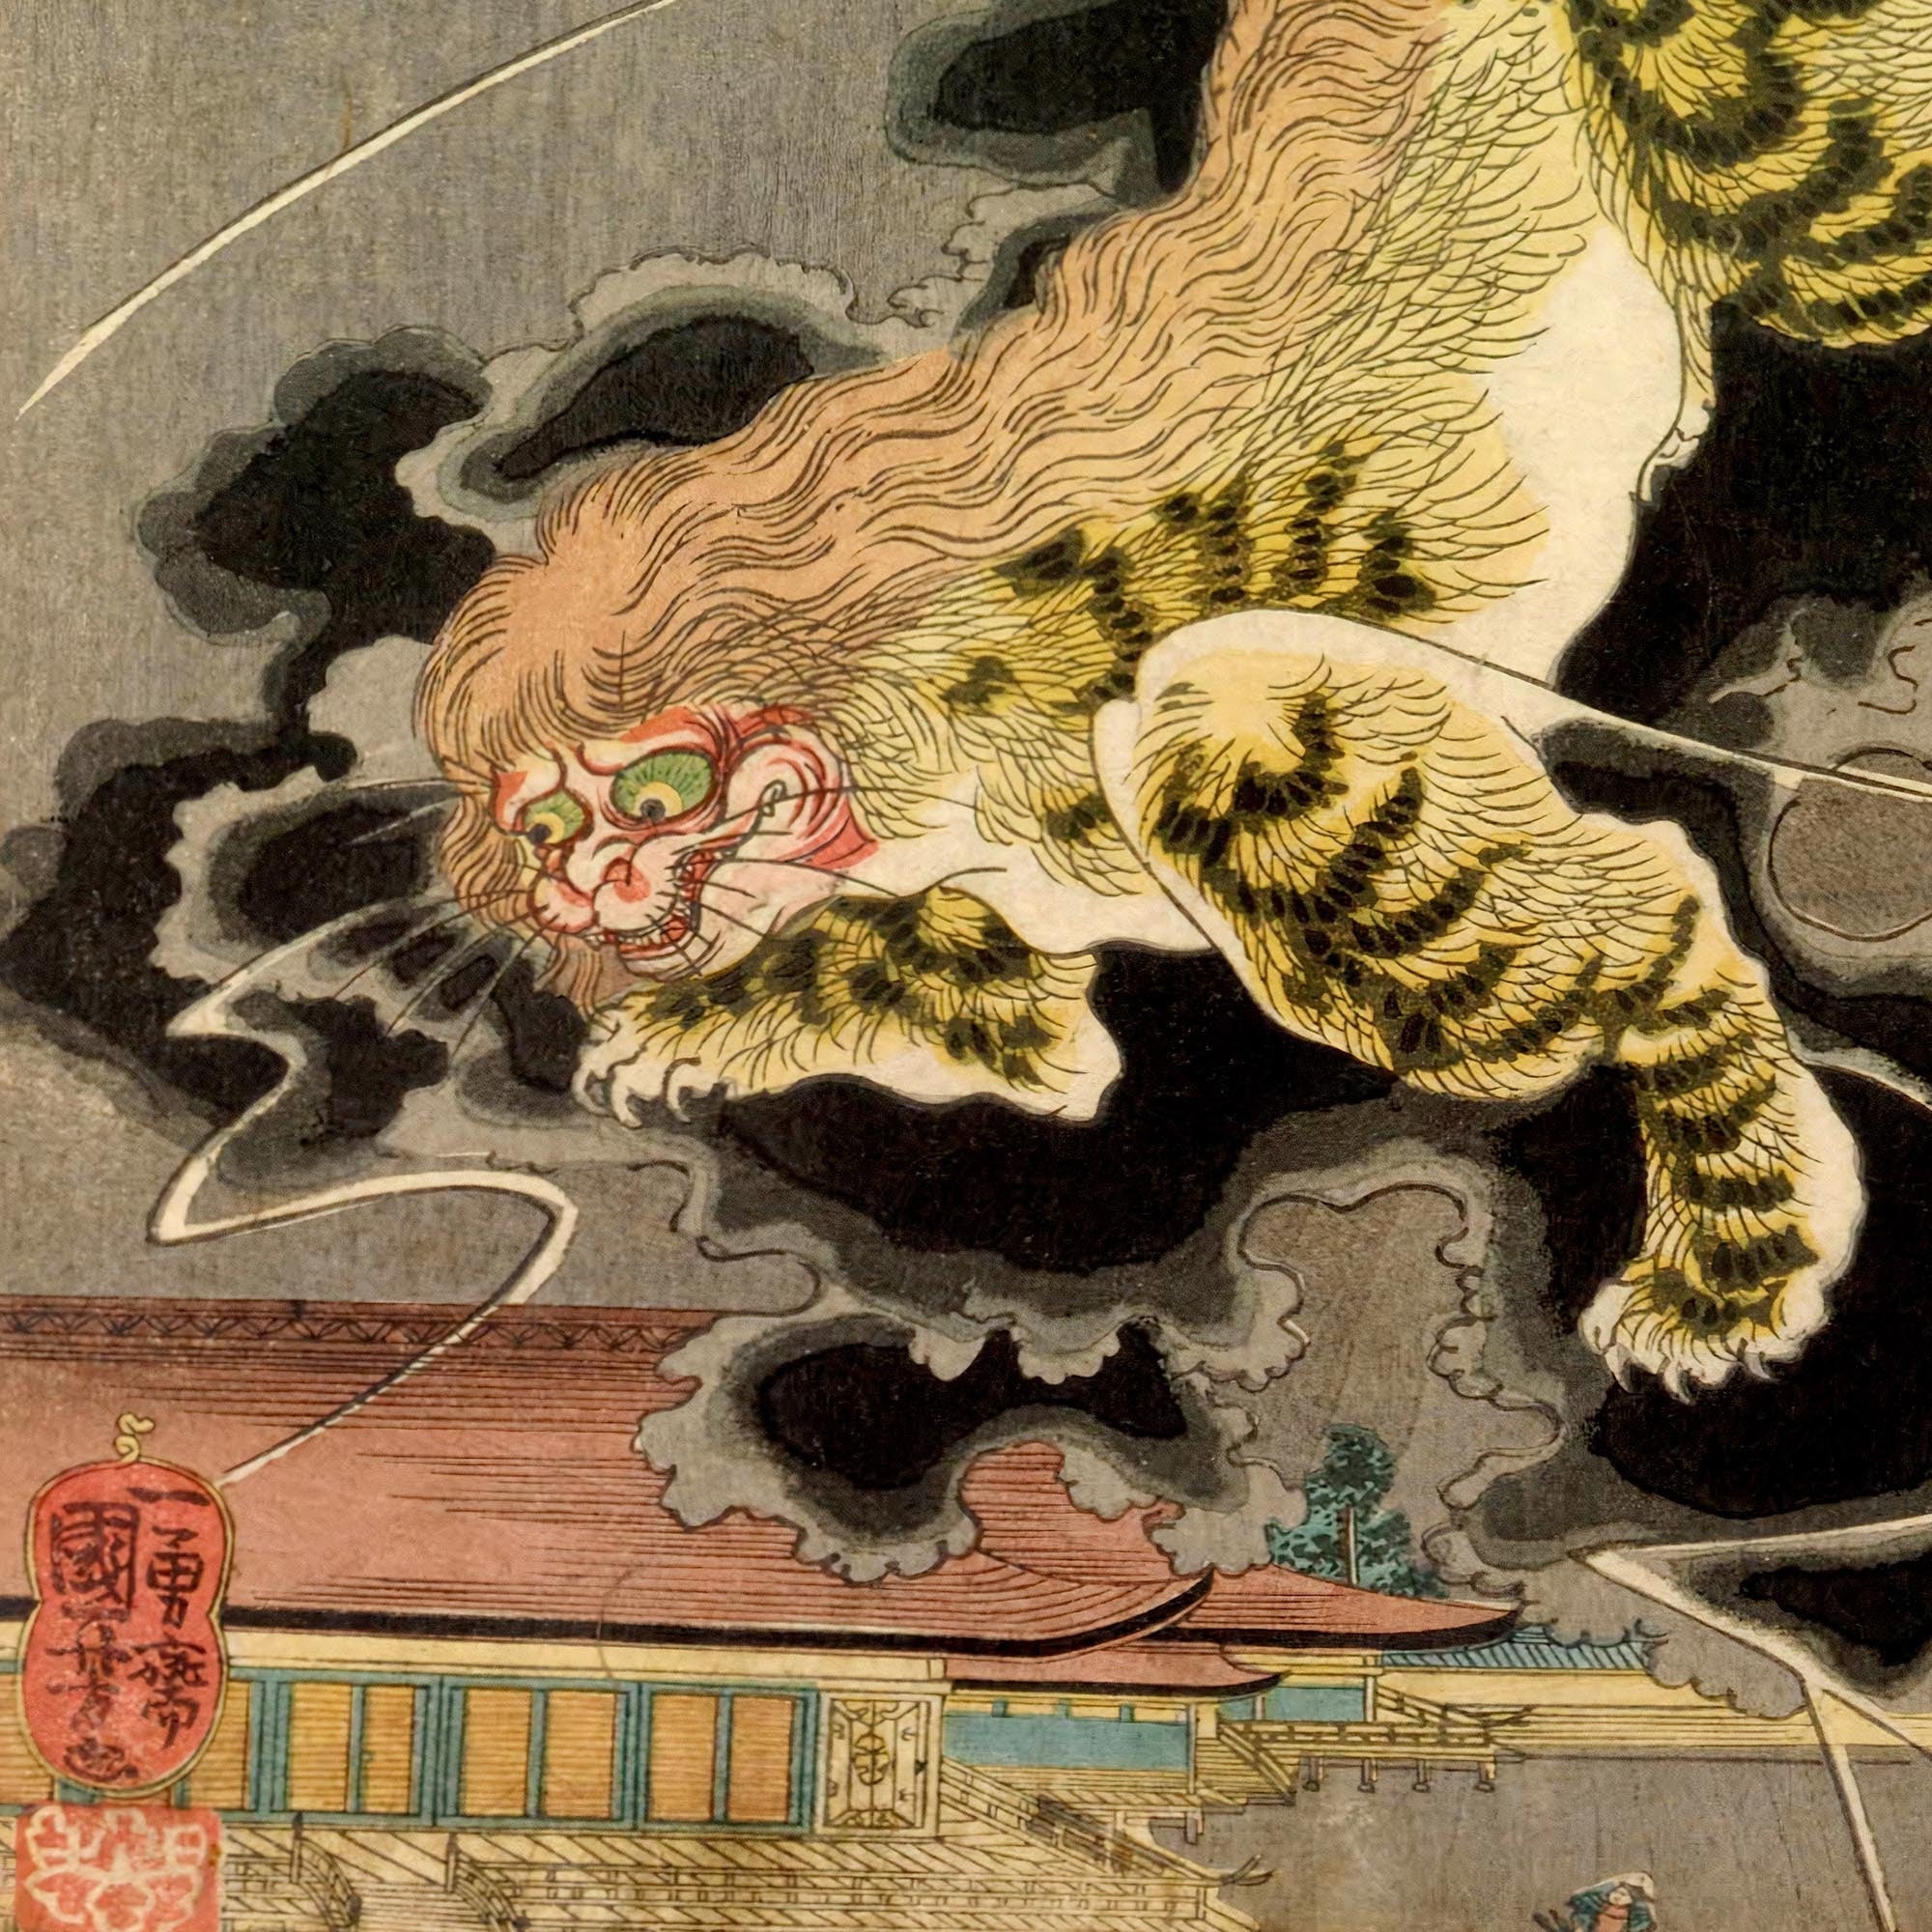 4"x6" Utagawa Kuniyoshi The End Tiger Lion Japanese Ukiyo-e Vintage Edo Woodblock Yokai Mythology Fine Art Print